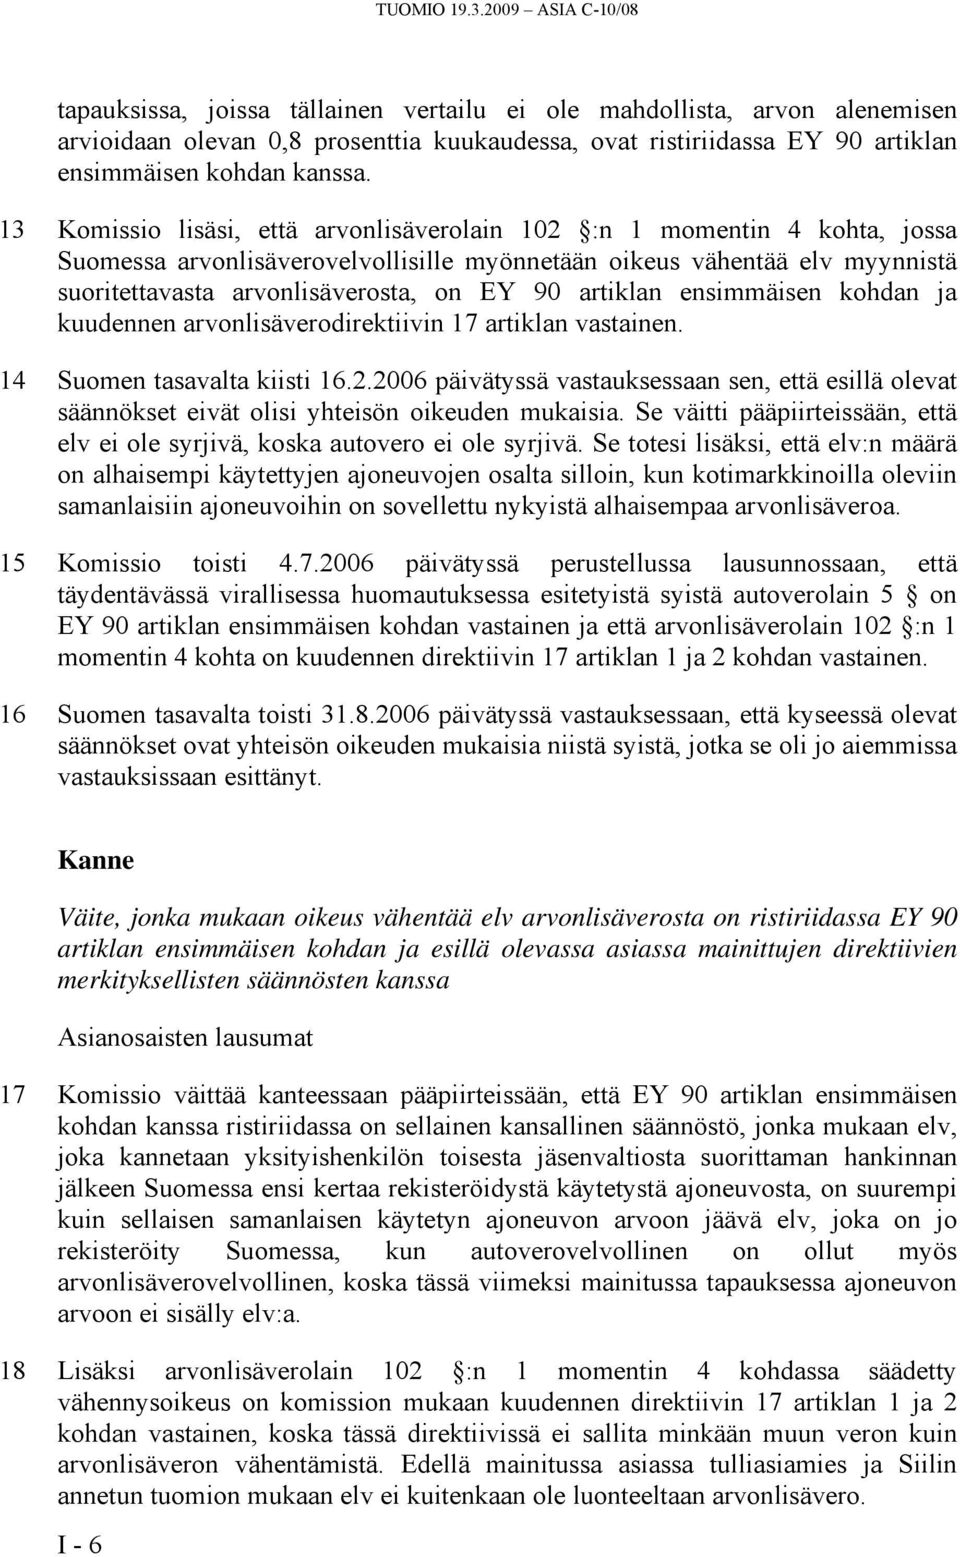 13 Komissio lisäsi, että arvonlisäverolain 102 :n 1 momentin 4 kohta, jossa Suomessa arvonlisäverovelvollisille myönnetään oikeus vähentää elv myynnistä suoritettavasta arvonlisäverosta, on EY 90